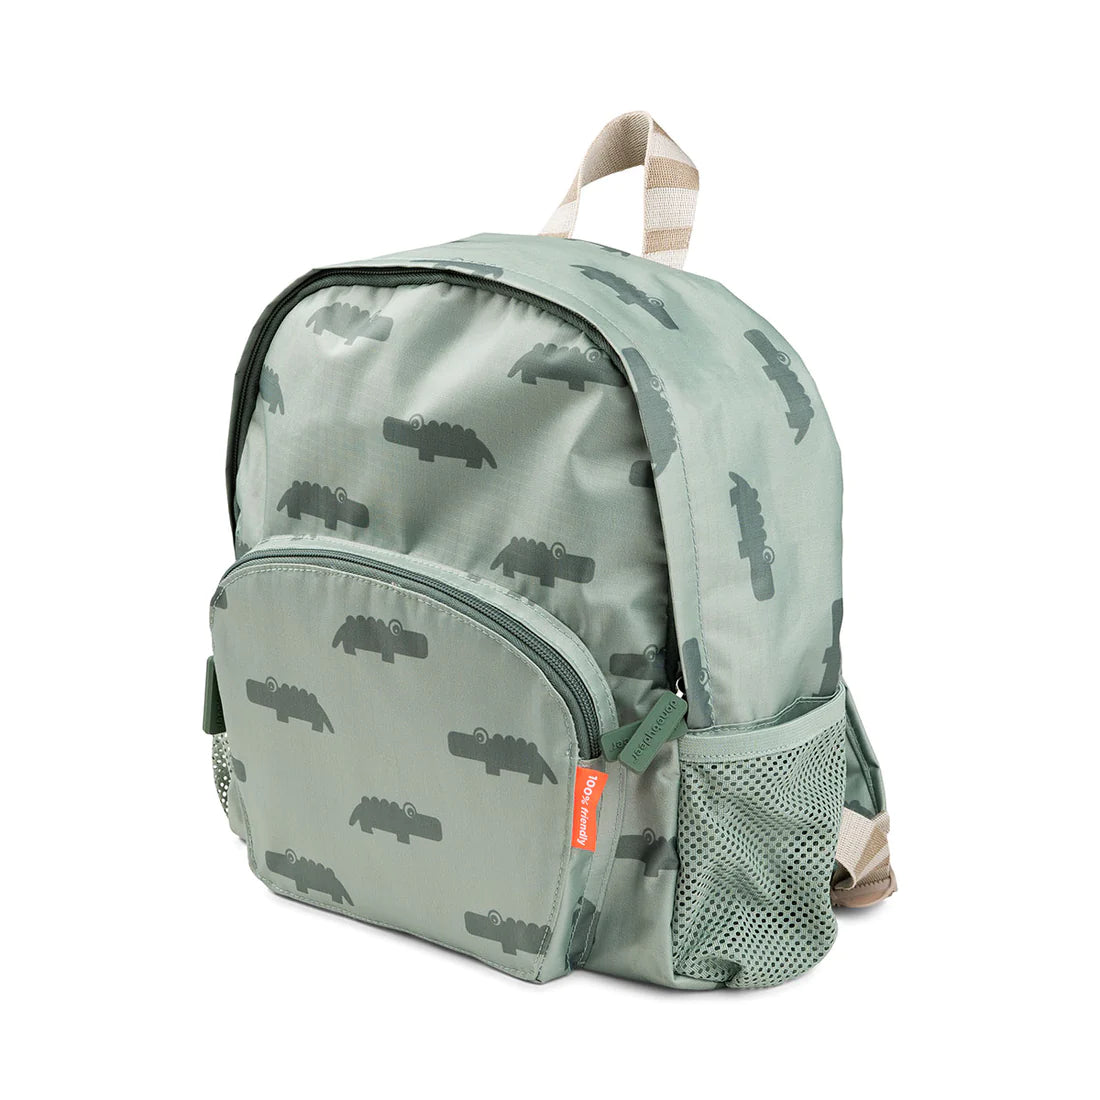 Kids backpack Croco Green